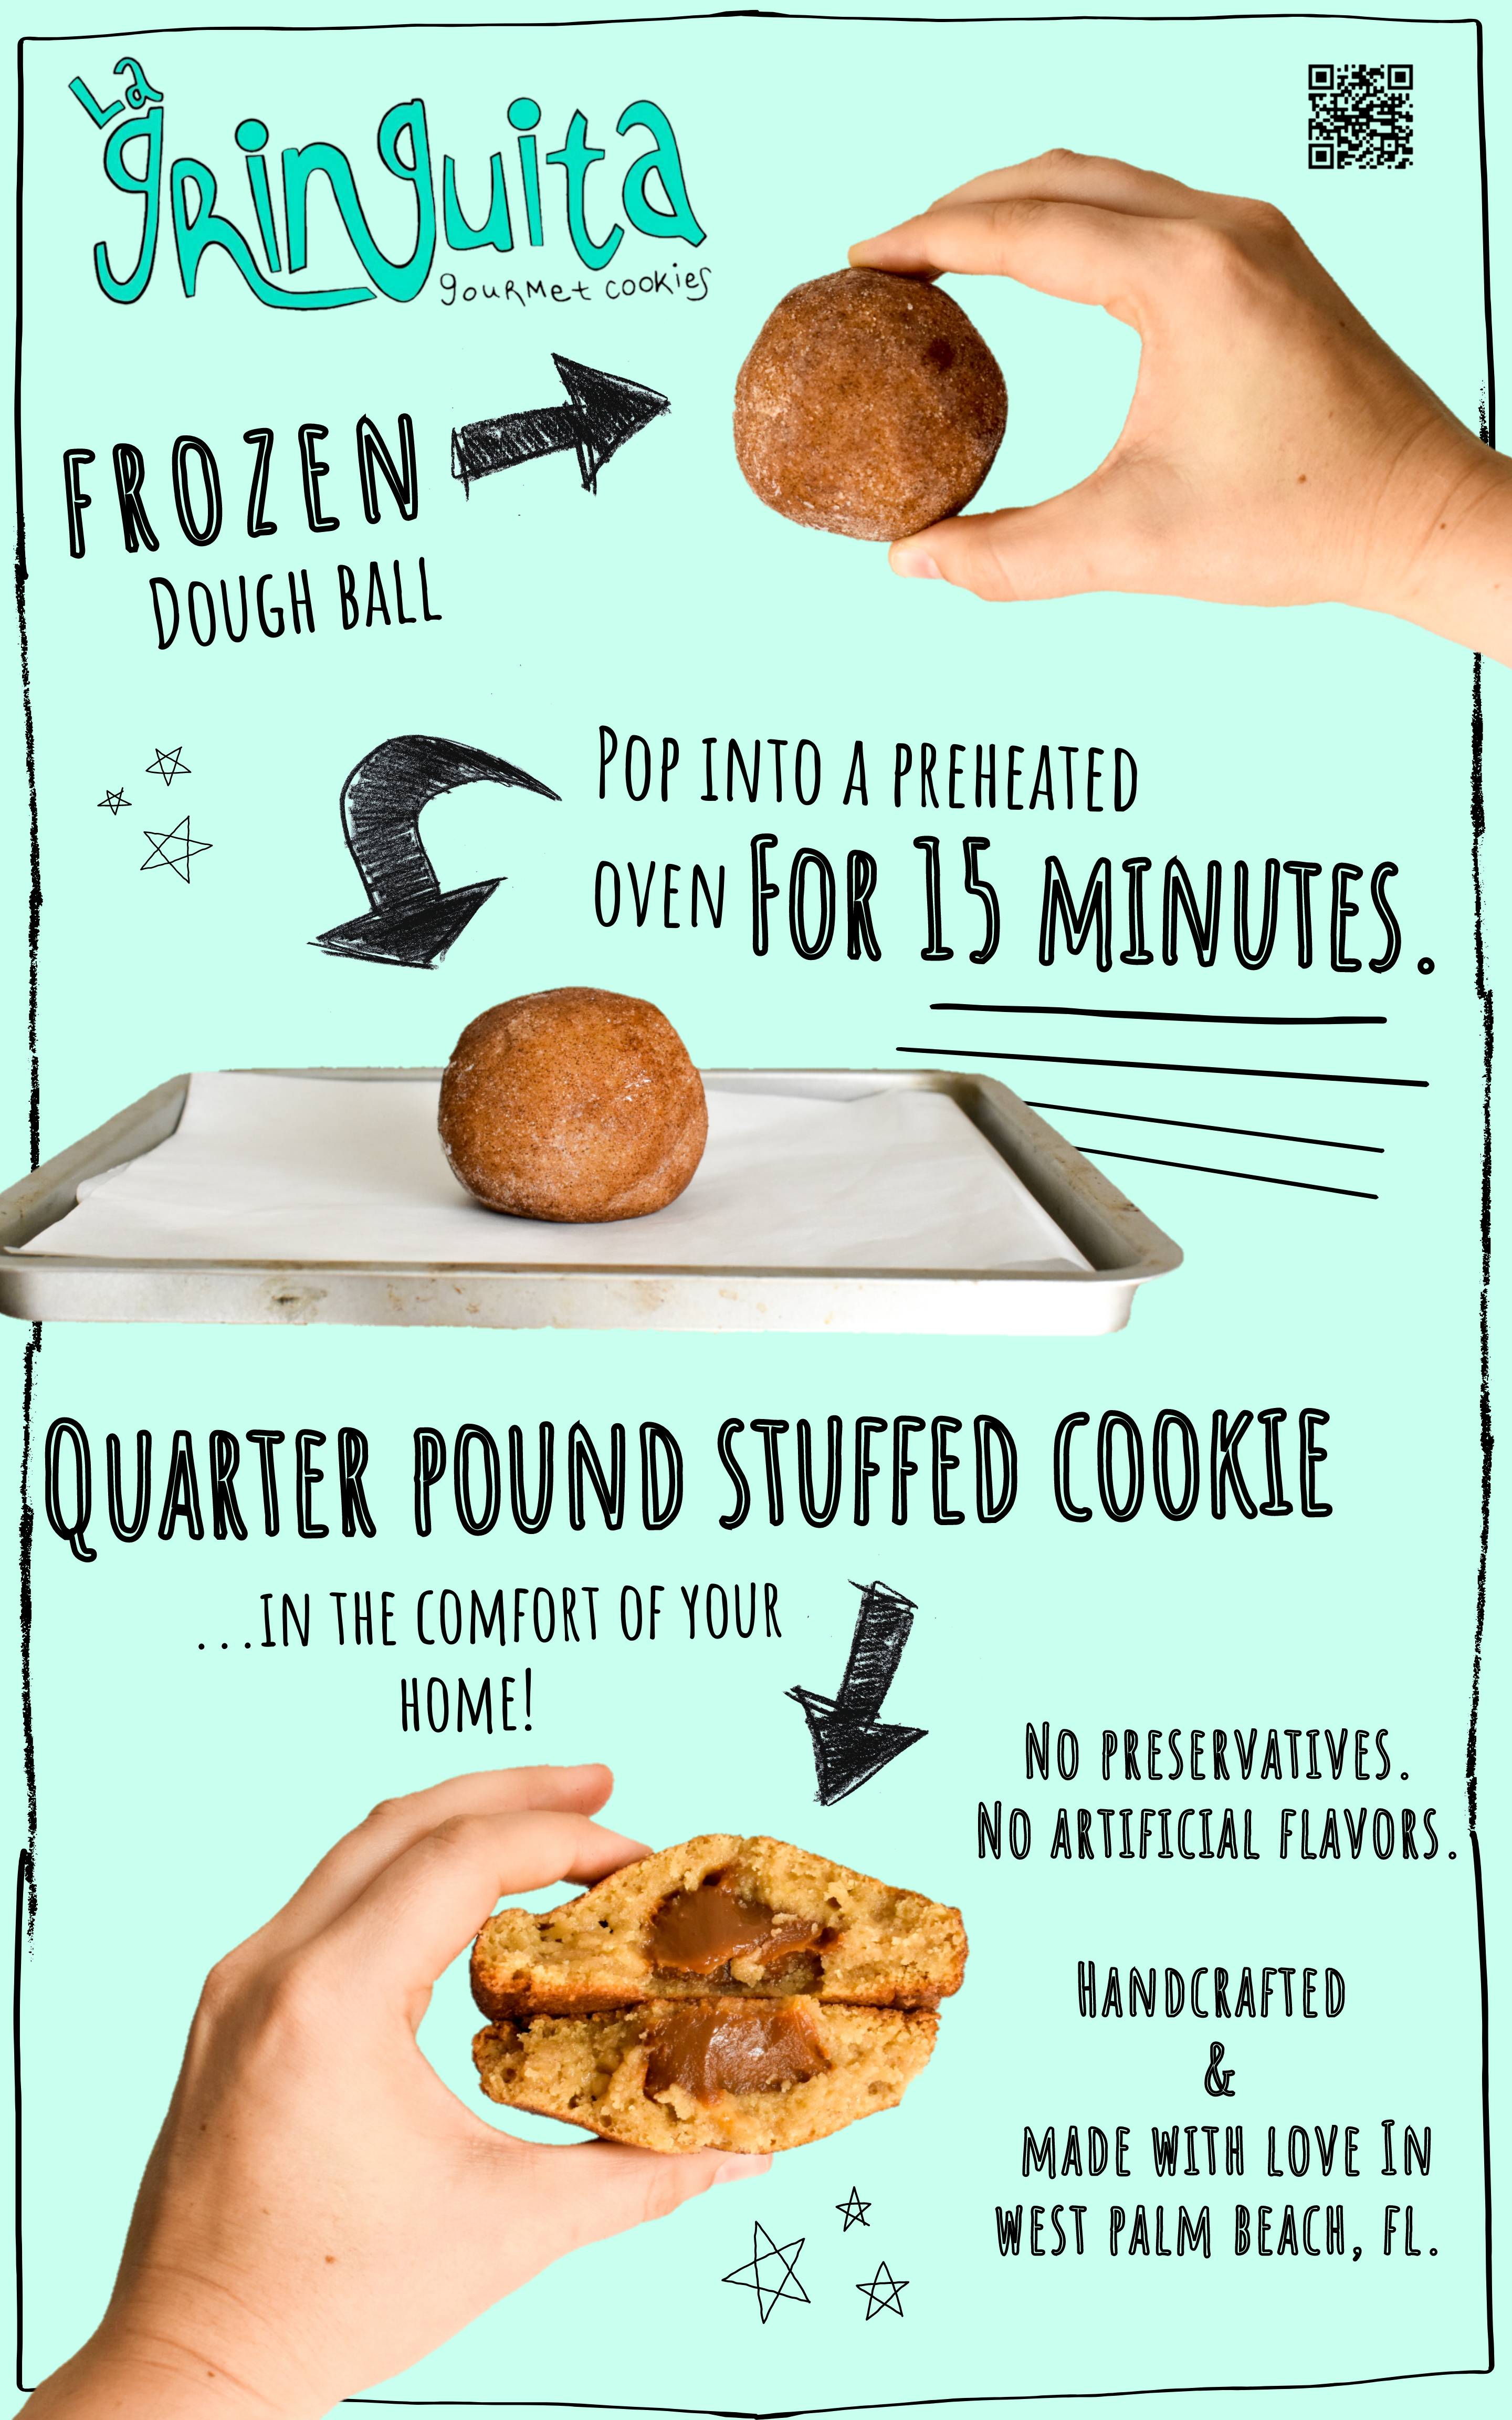 La Gringuita cookie dough baking instructions